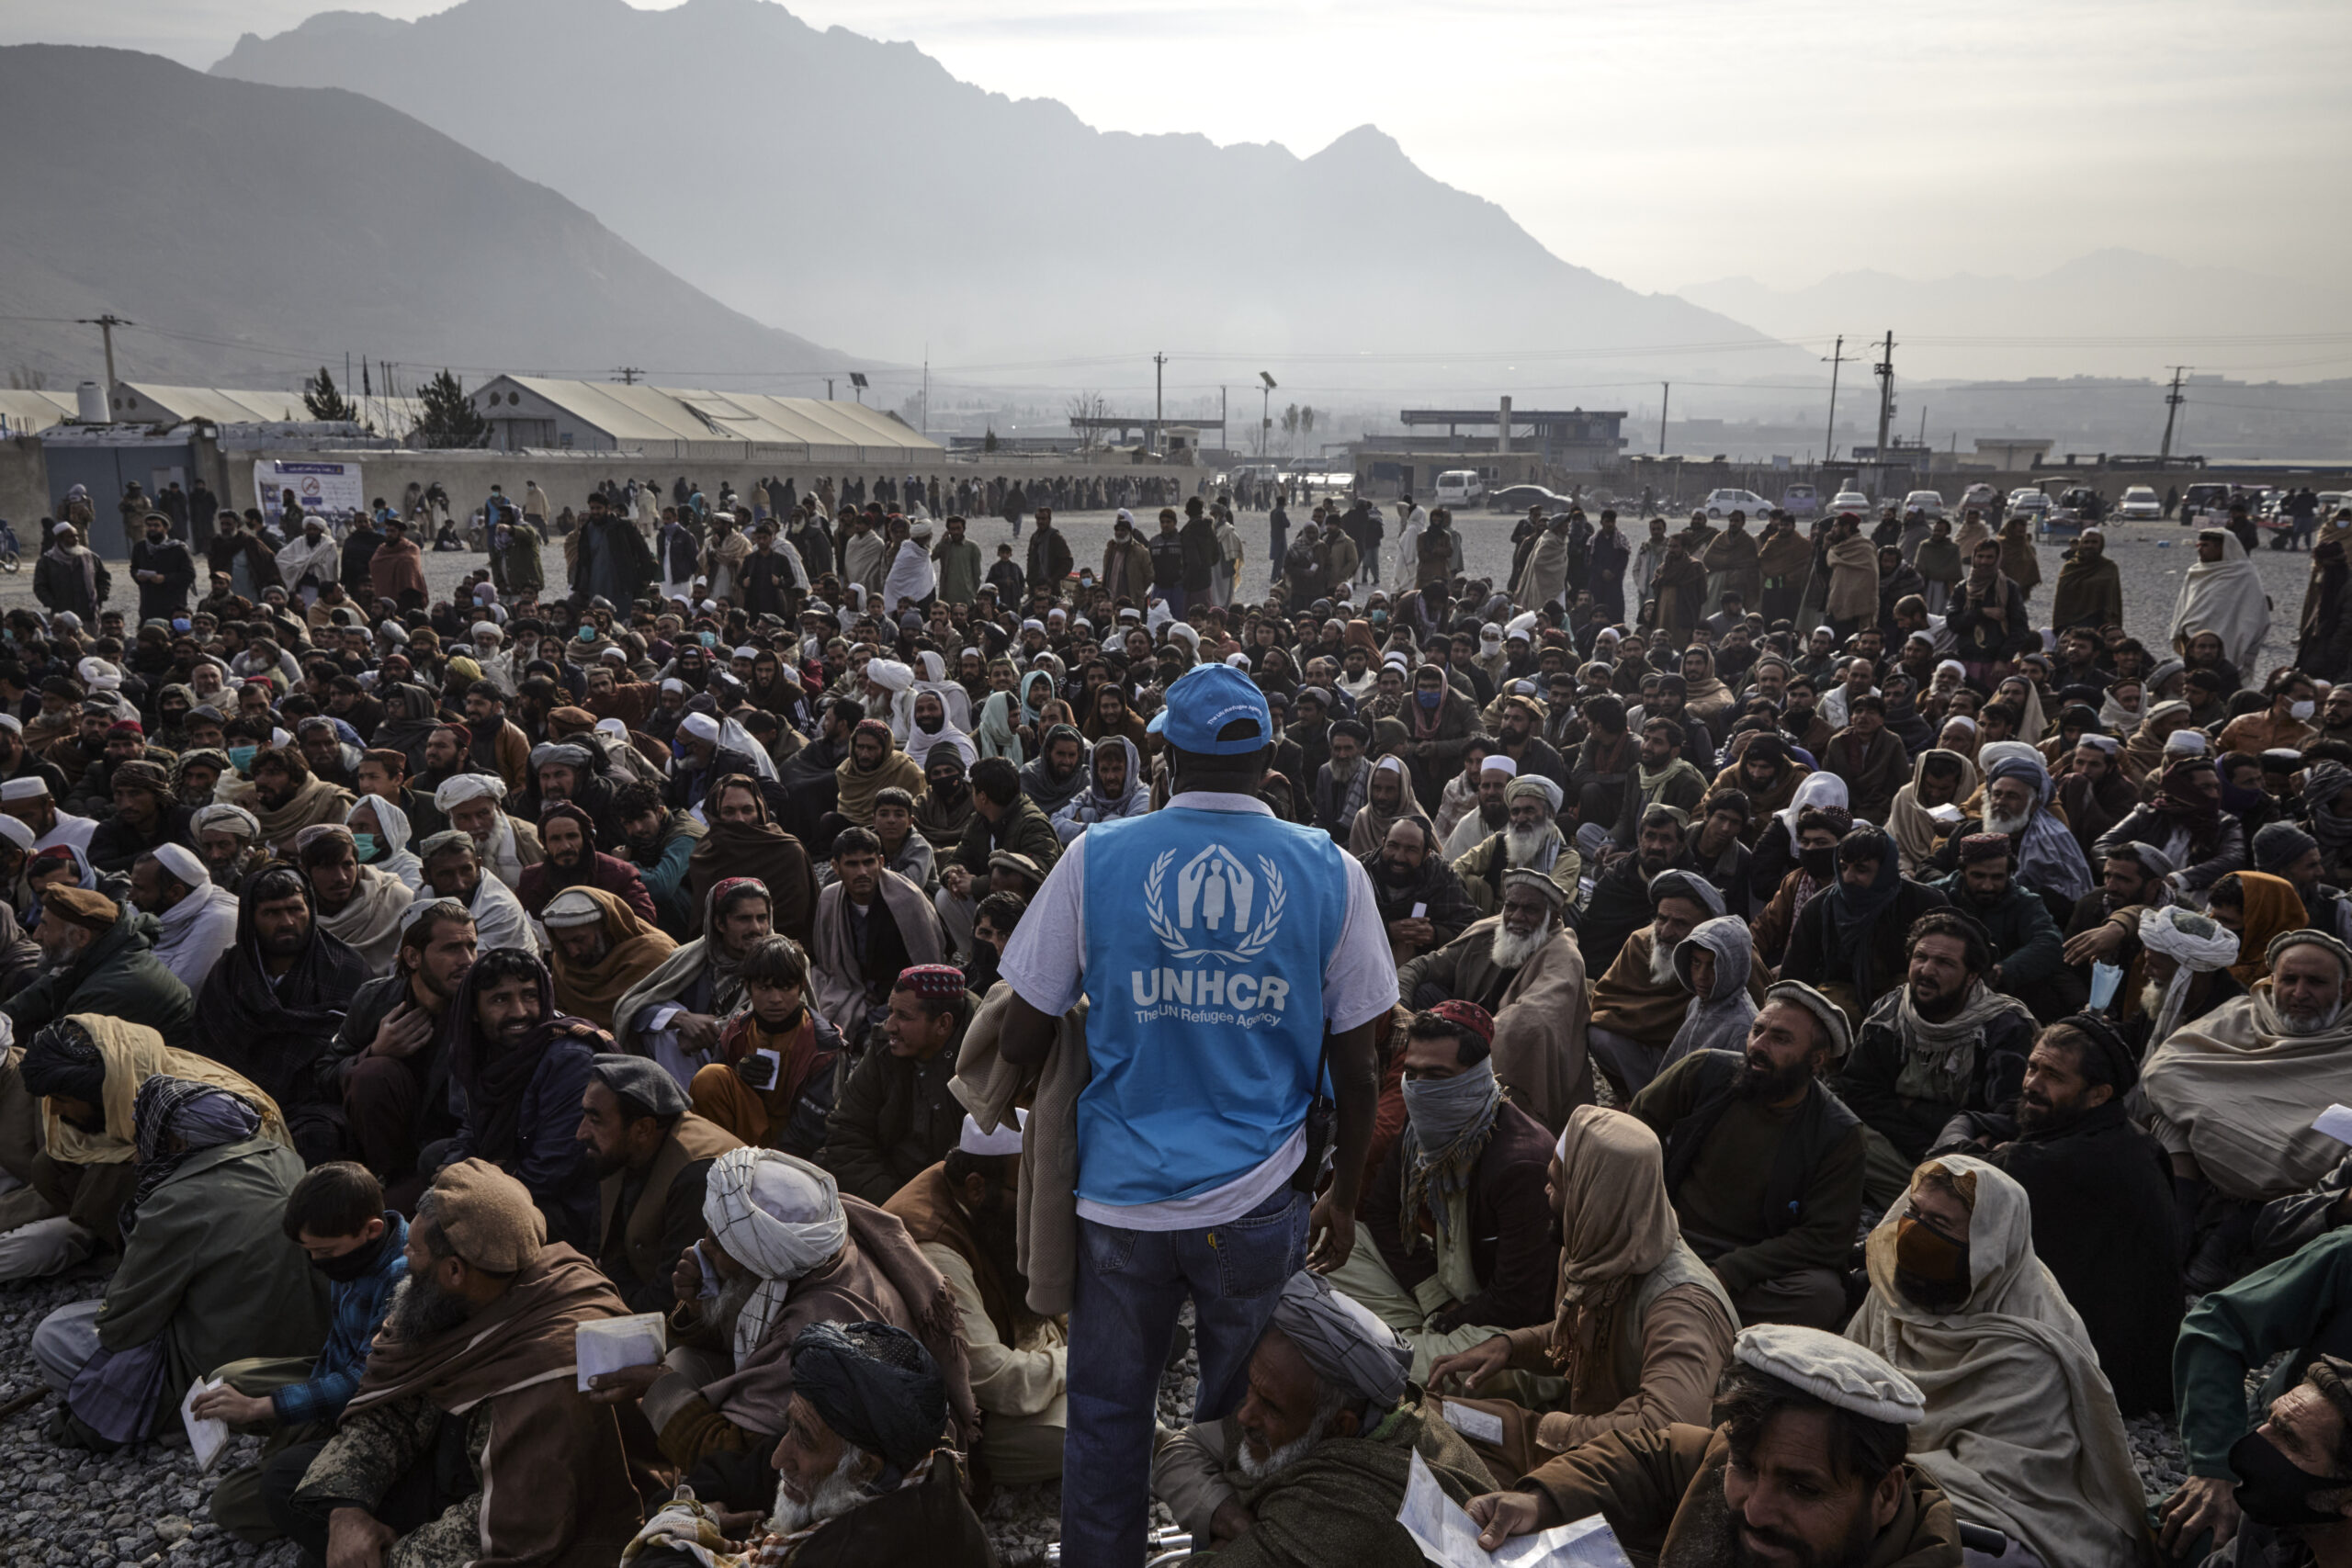 © UNHCR/Edris Lutfi